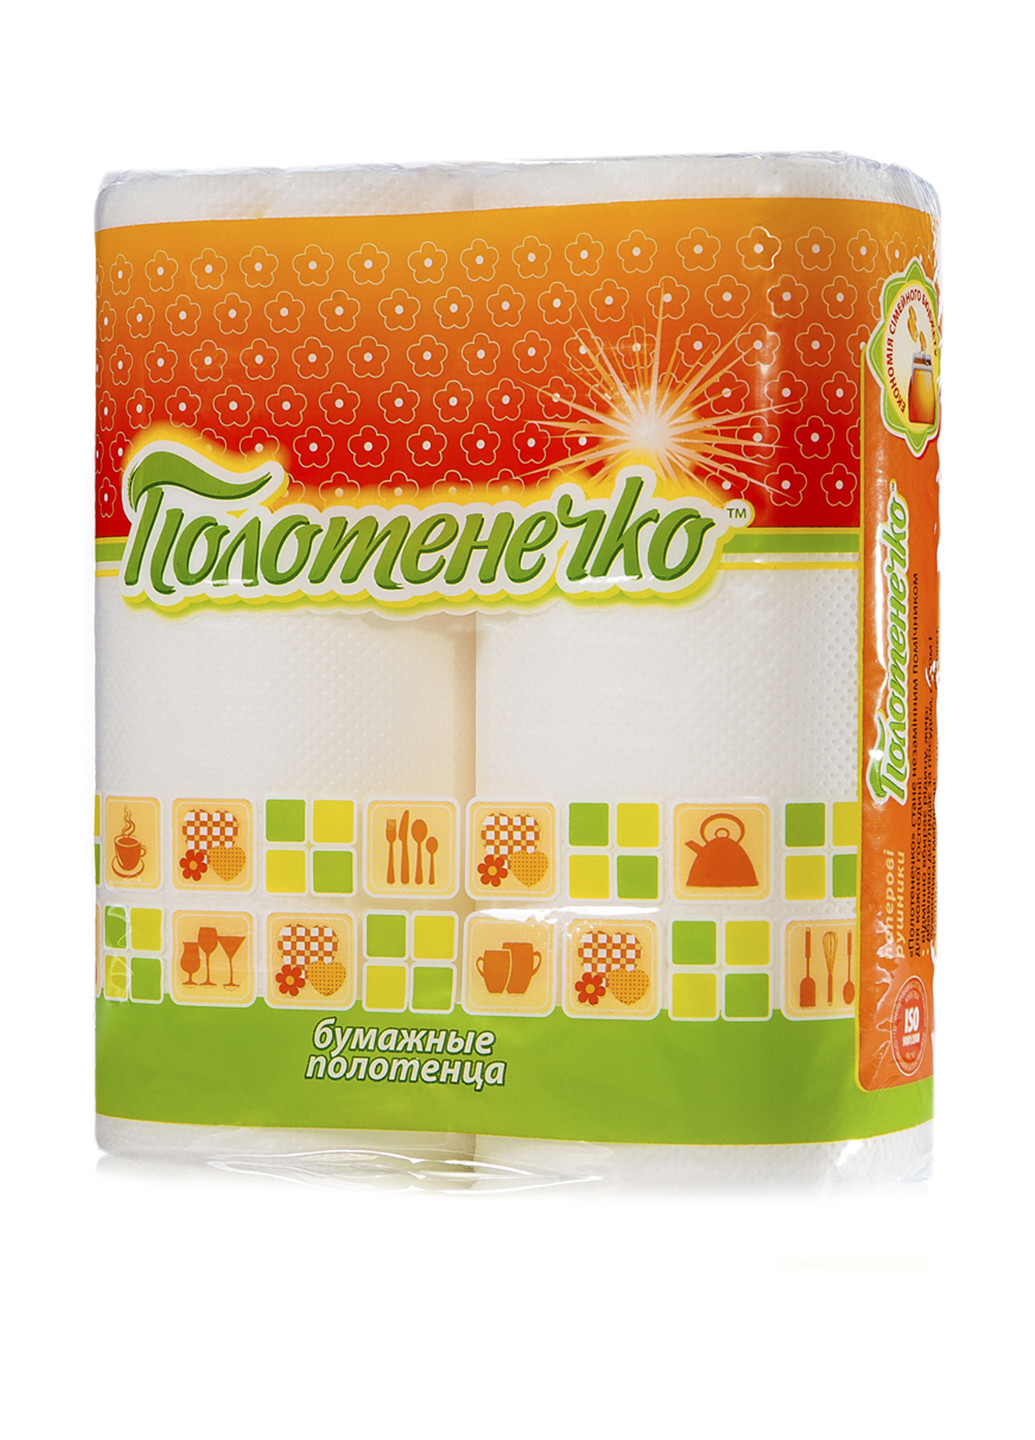 Бумажное полотенце Полотенечко (2 рулона) Ruta (89545090)